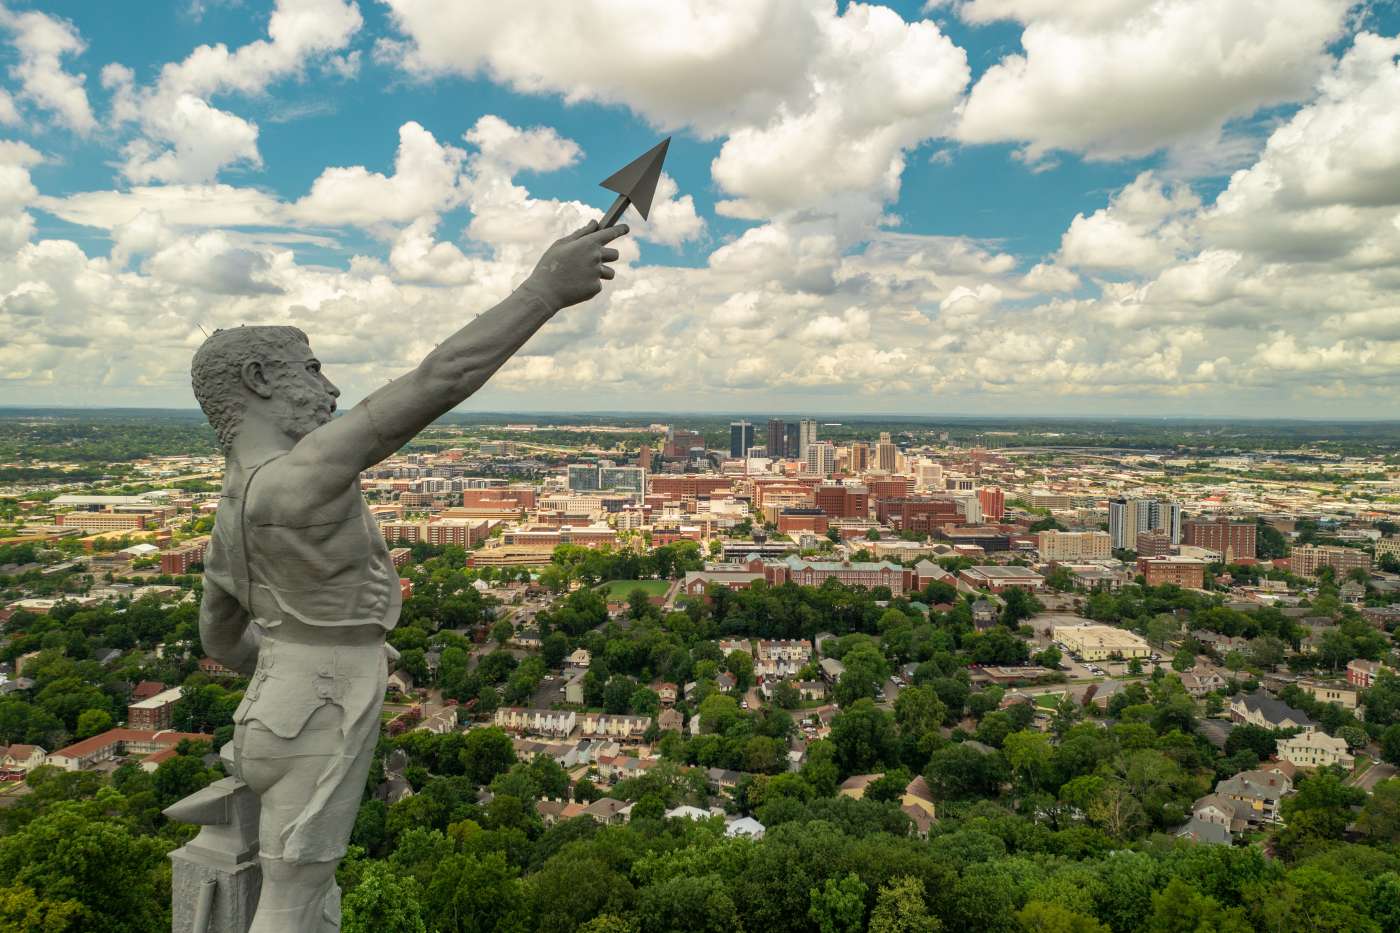 The Vulcan statue in Birmingham, AL